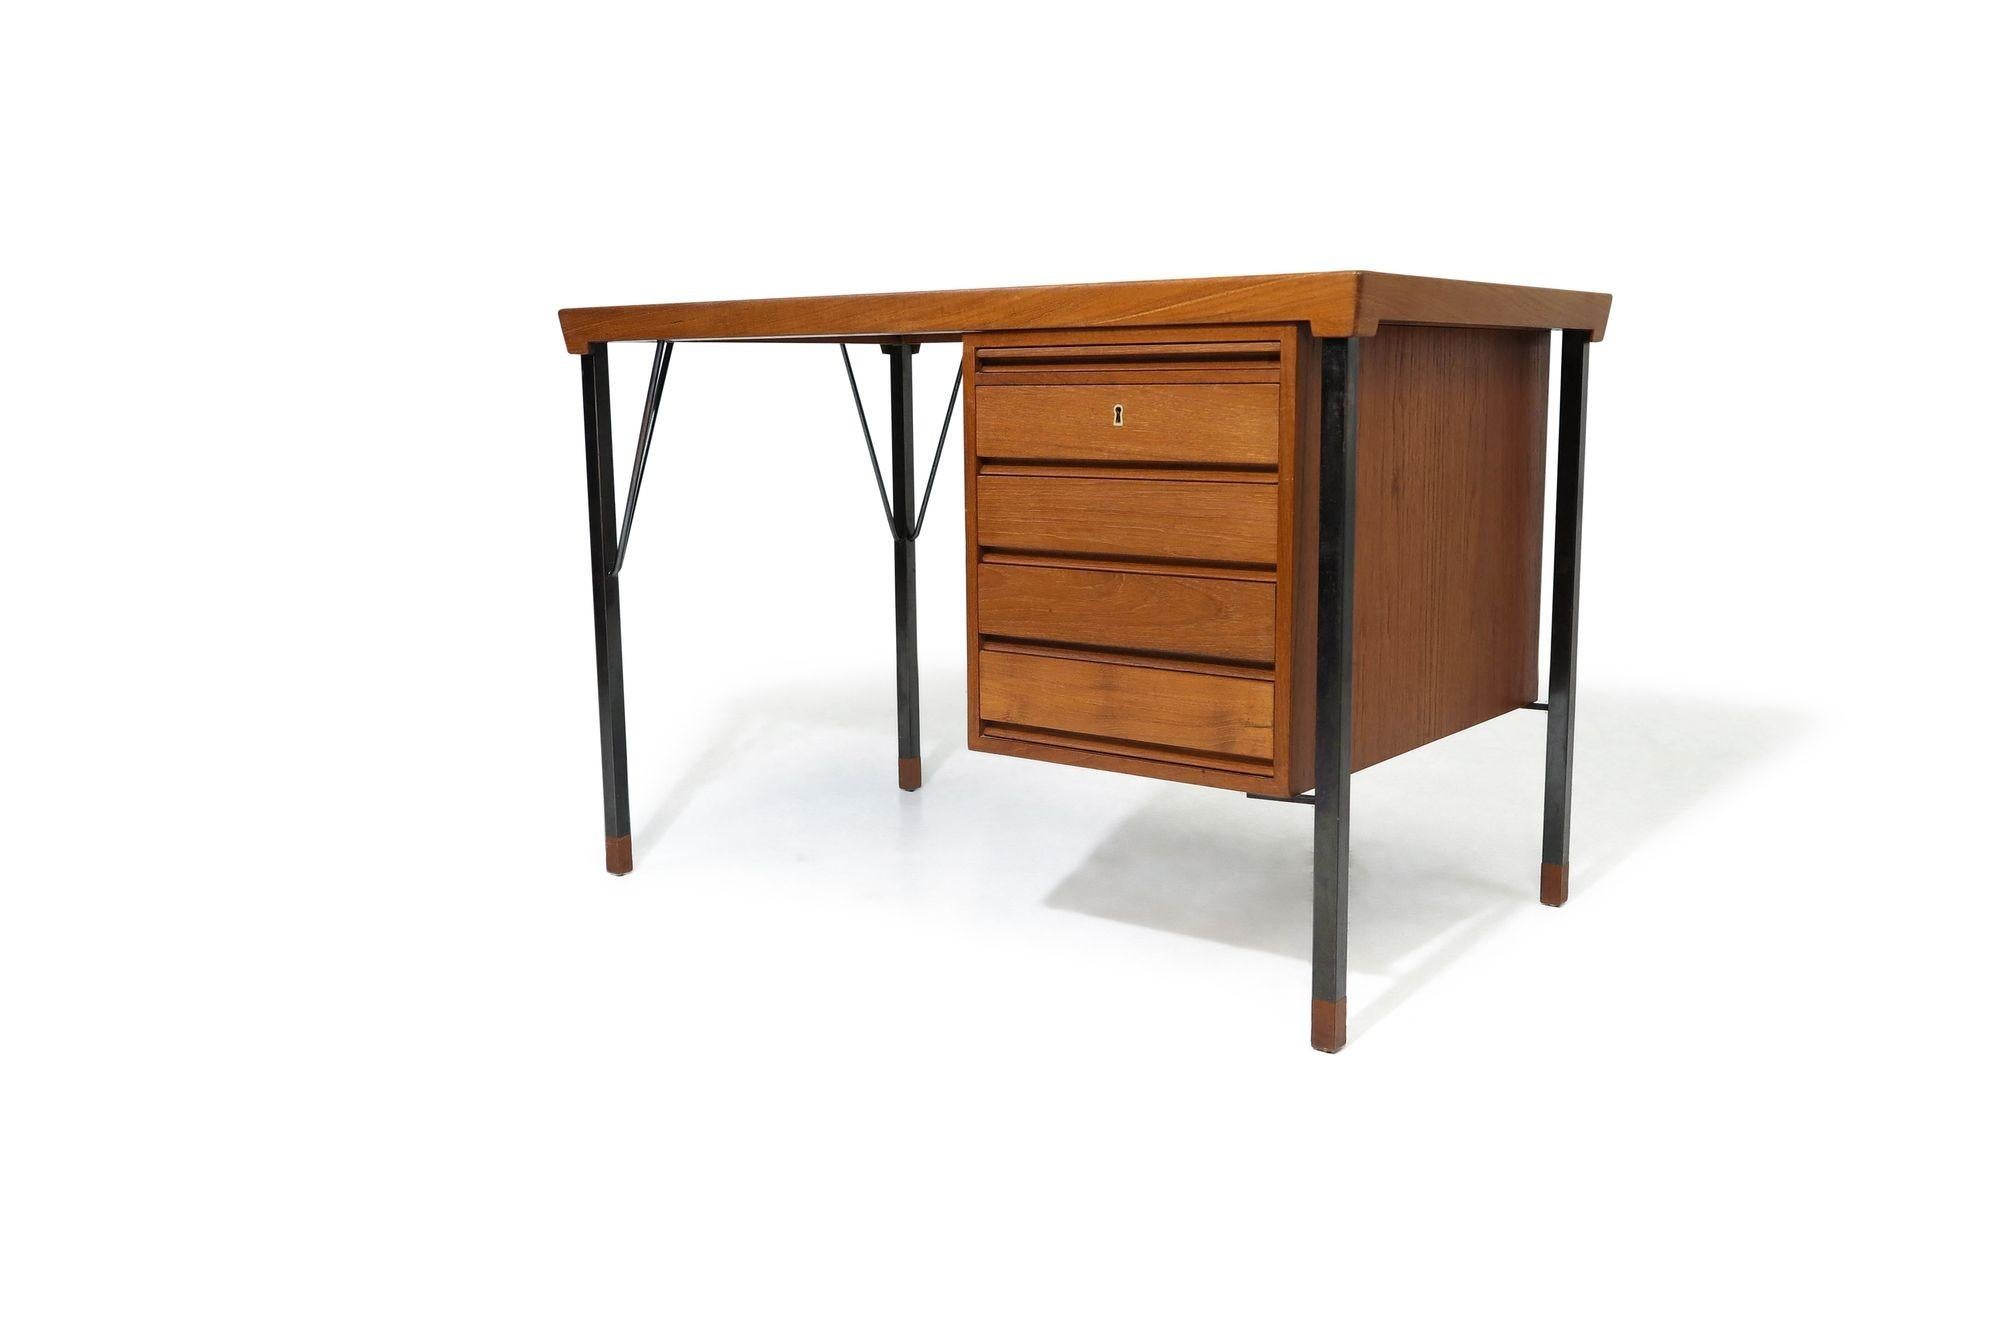 20th Century Minimal Danish Designed Teak Desk By Peter Hvidt For Sale